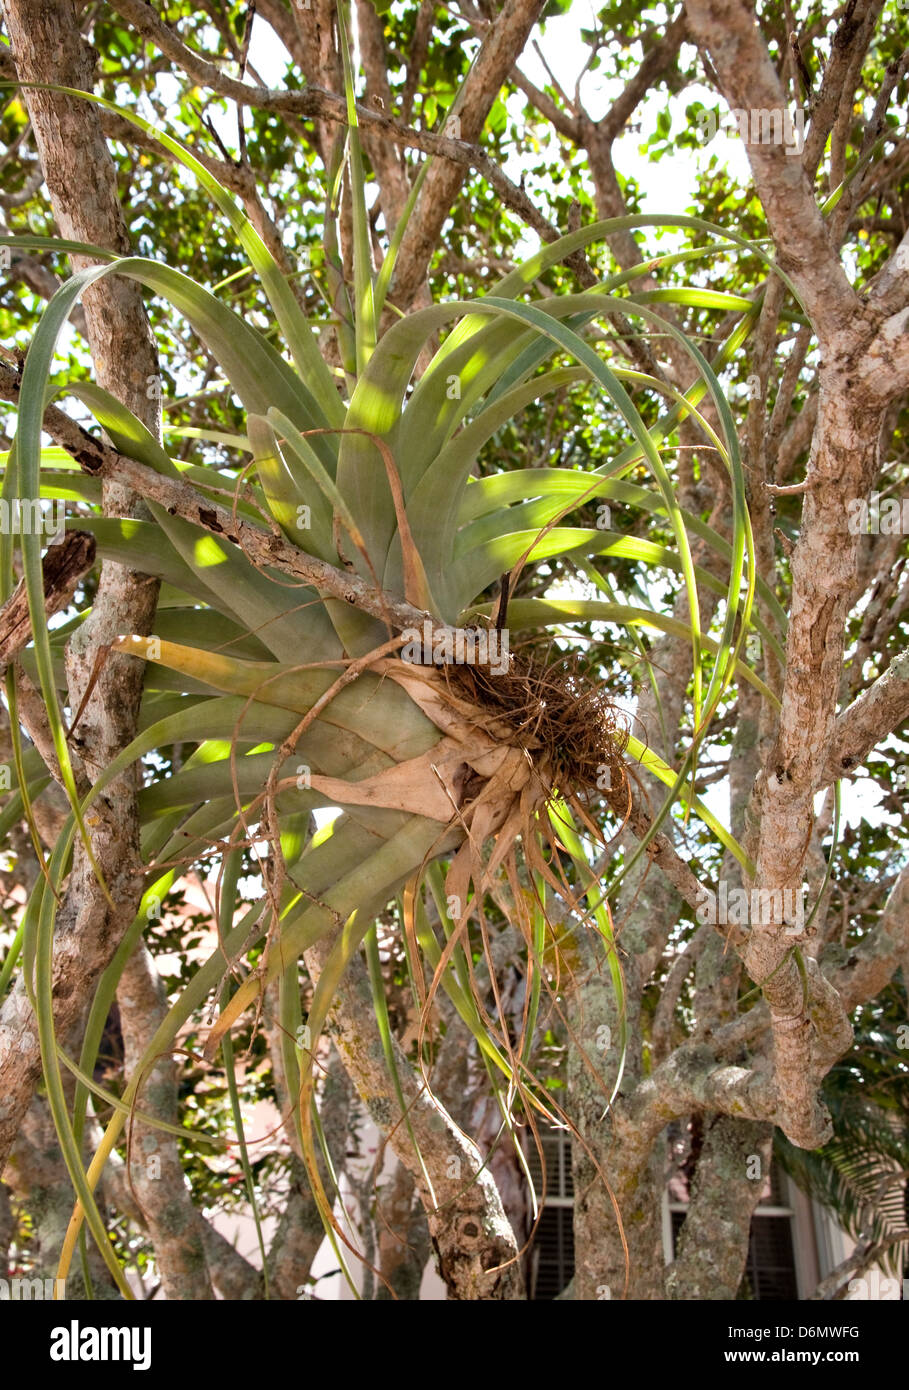 Tillandsia utriculata, planta de aire, bromelias. Epífita vive en un árbol hospedero, utilizando sus raíces al ancla. No requiere de suelos. Foto de stock